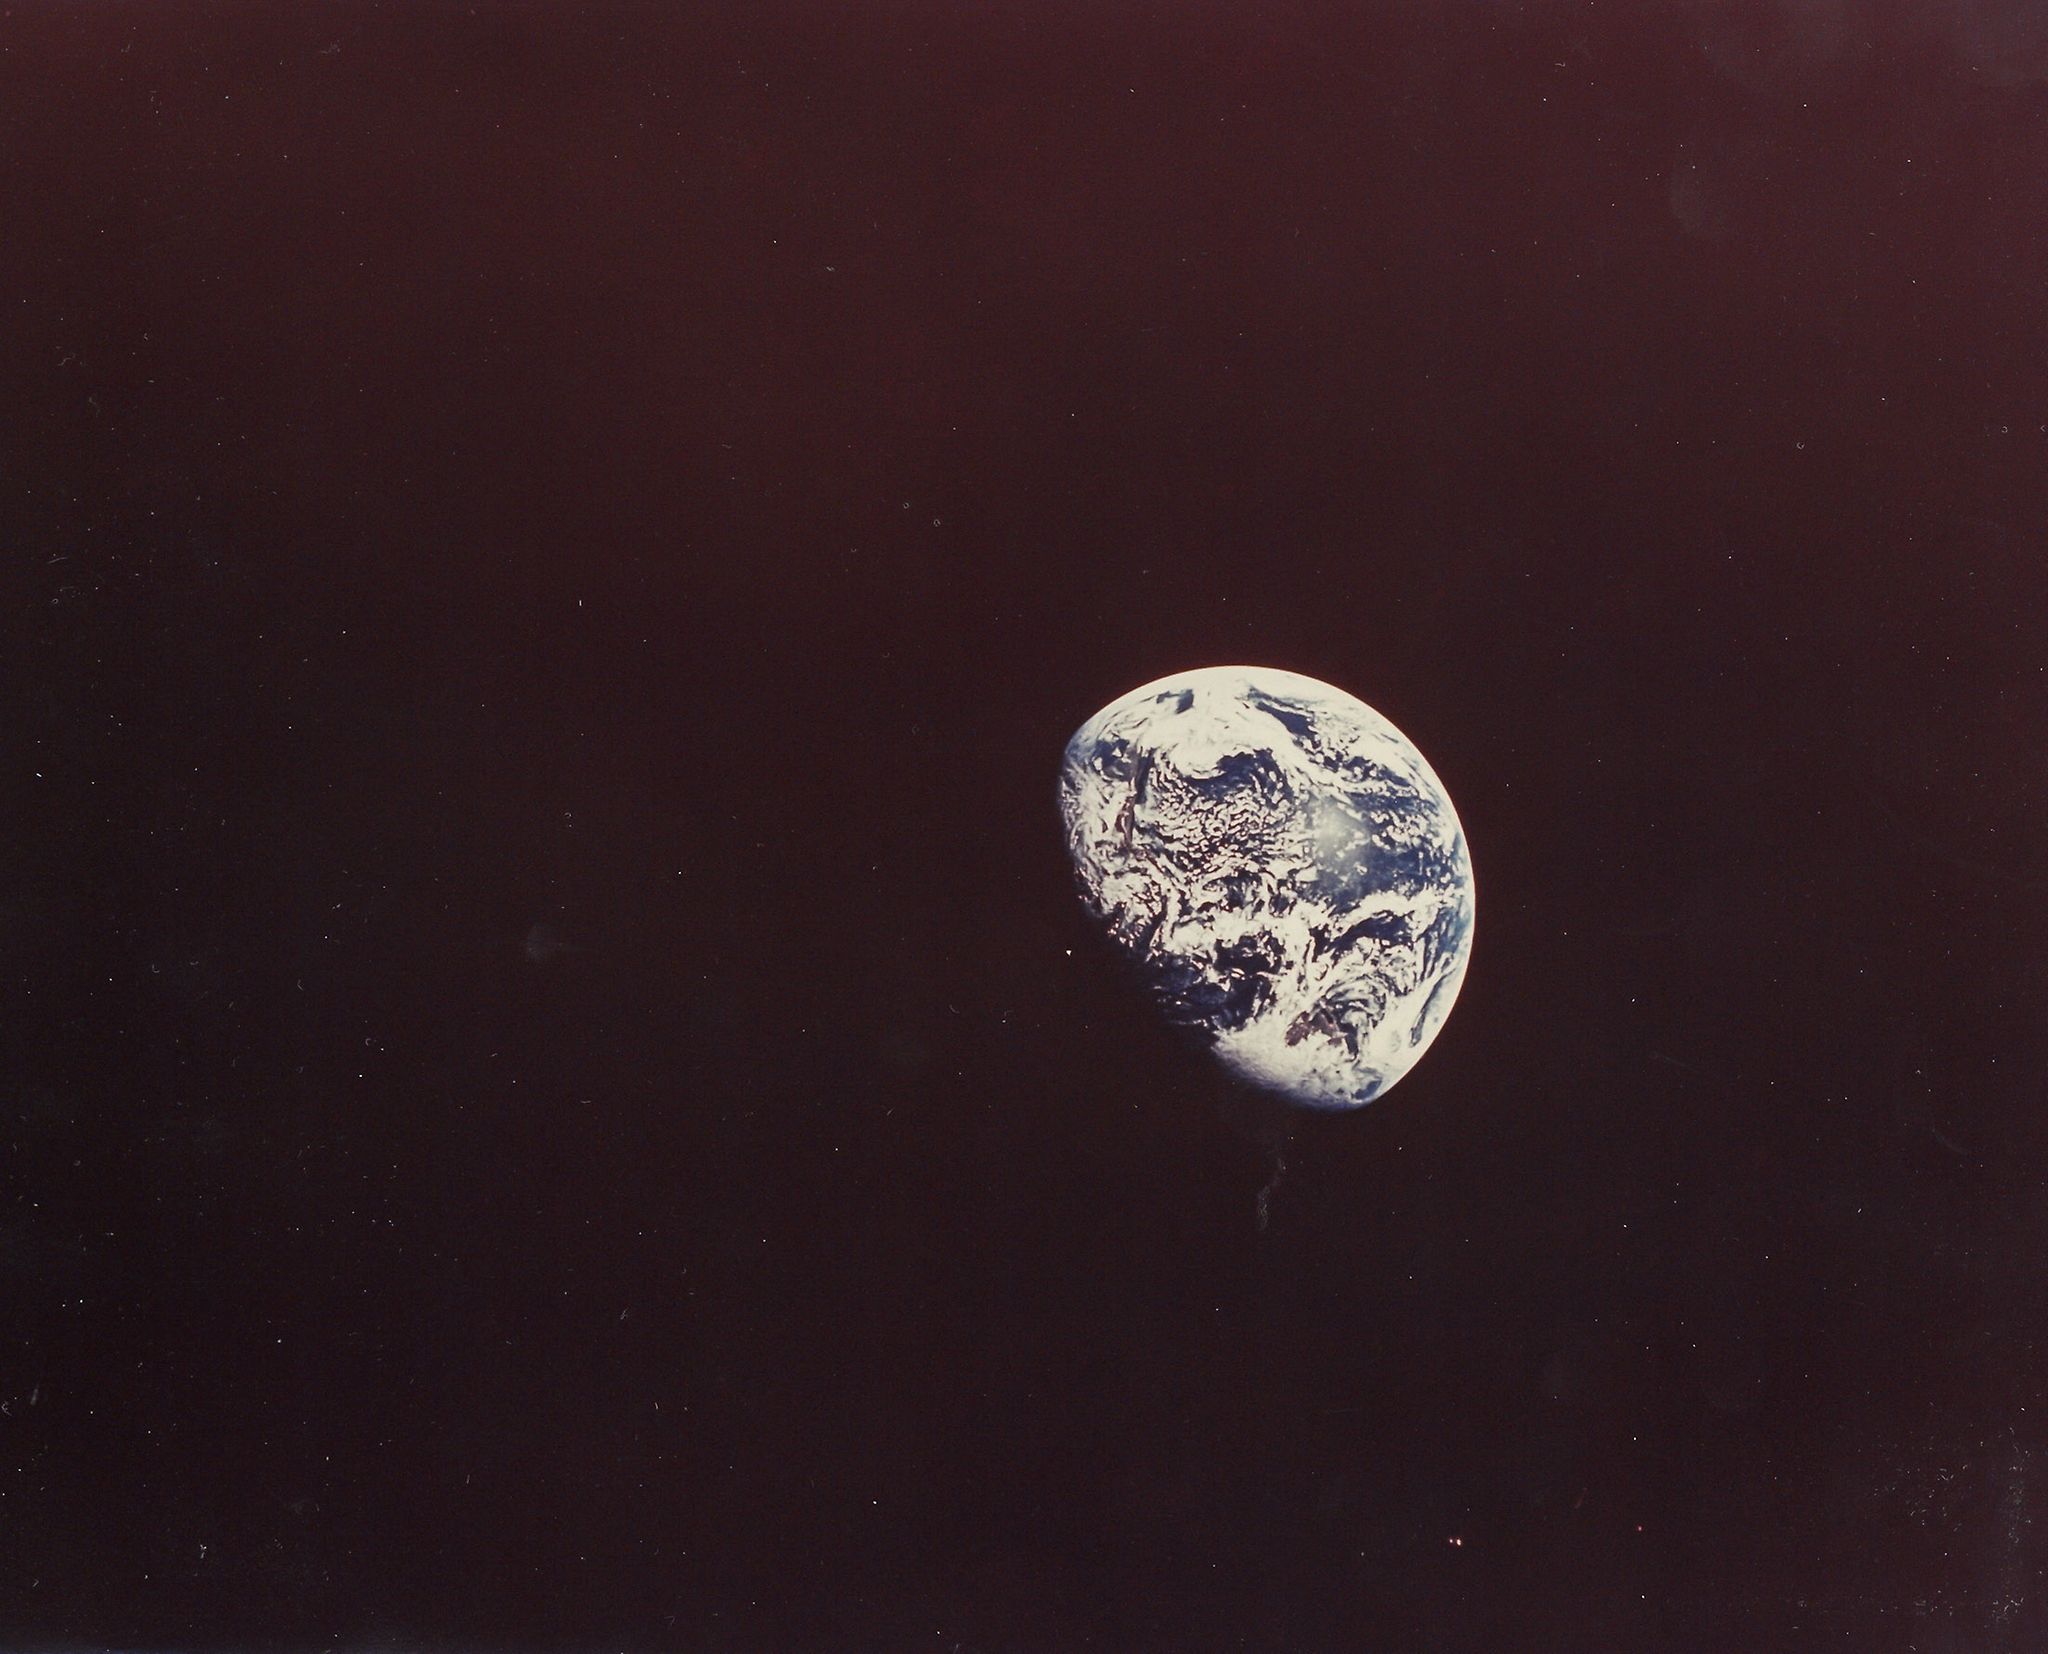 William Anders - Planet Earth seen during translunar coast, Apollo 8, December 1968 Vintage